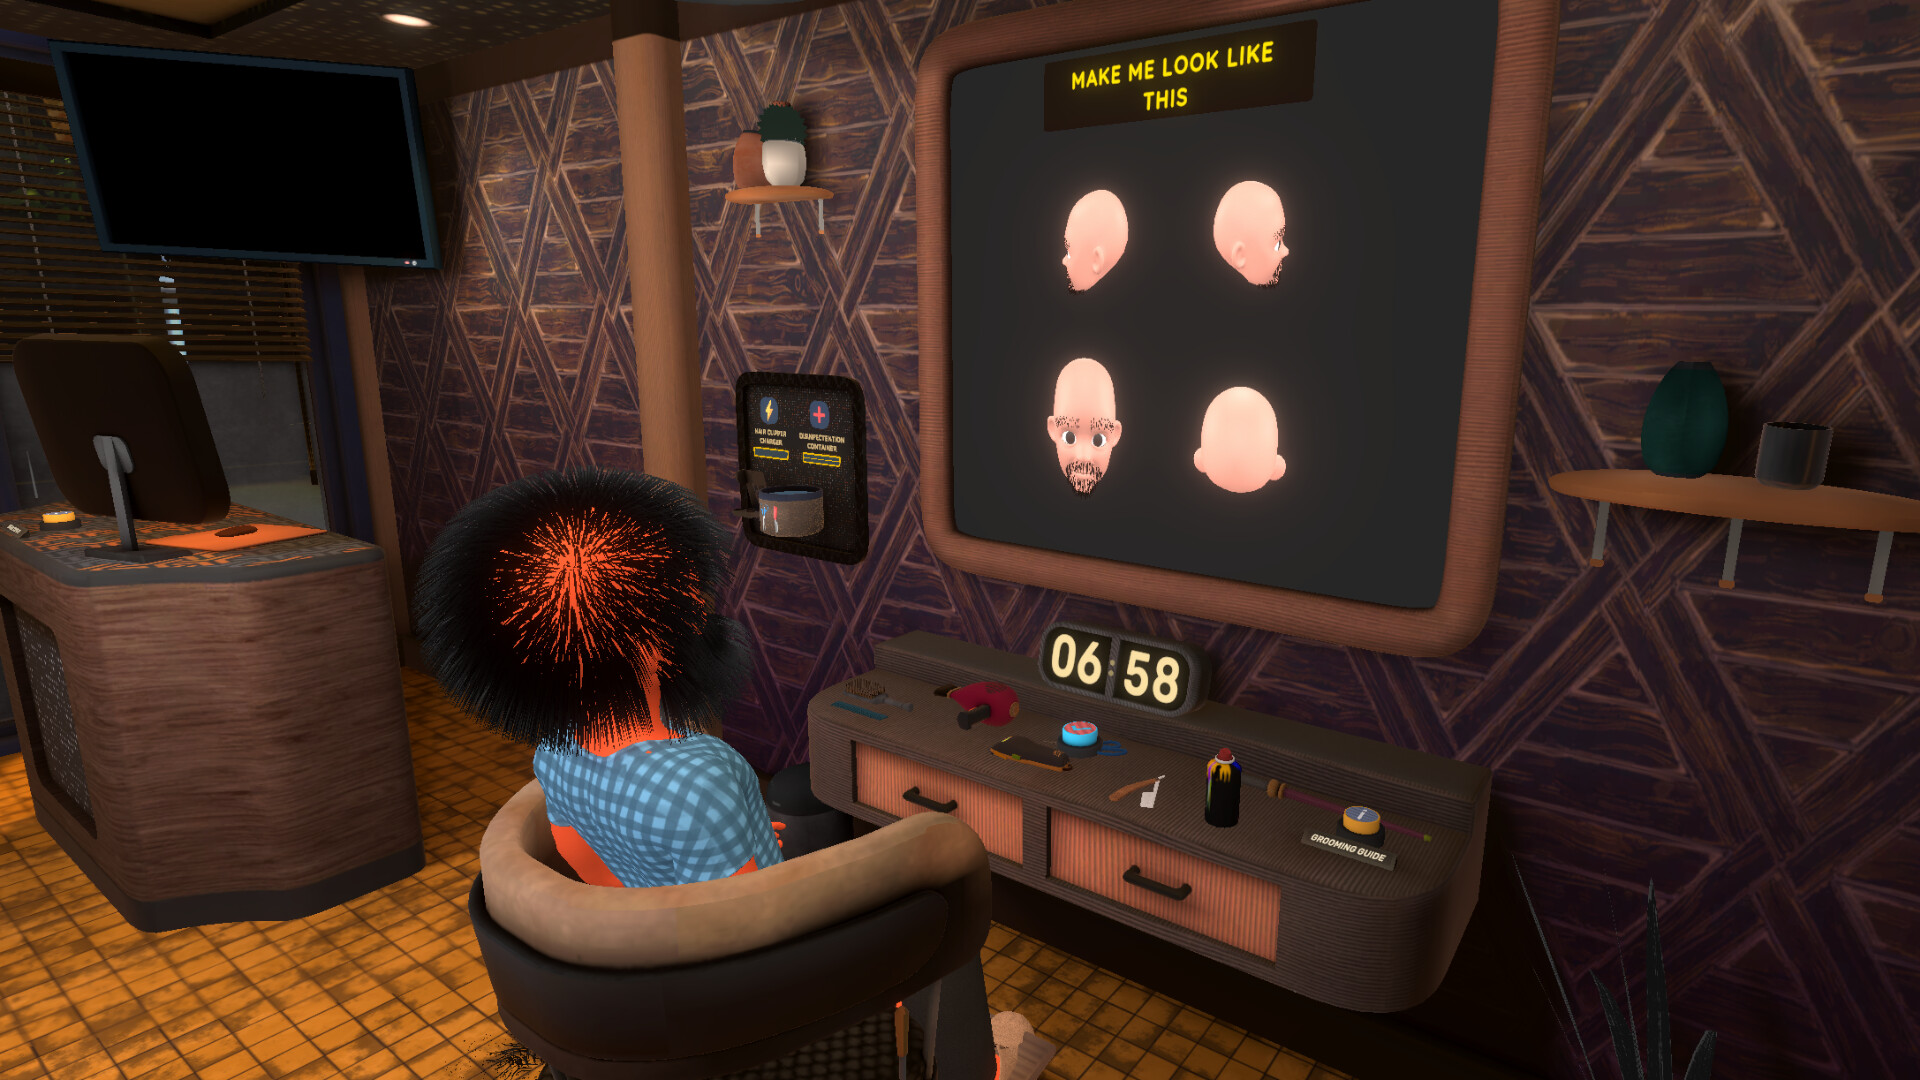 Barbershop Simulator! 